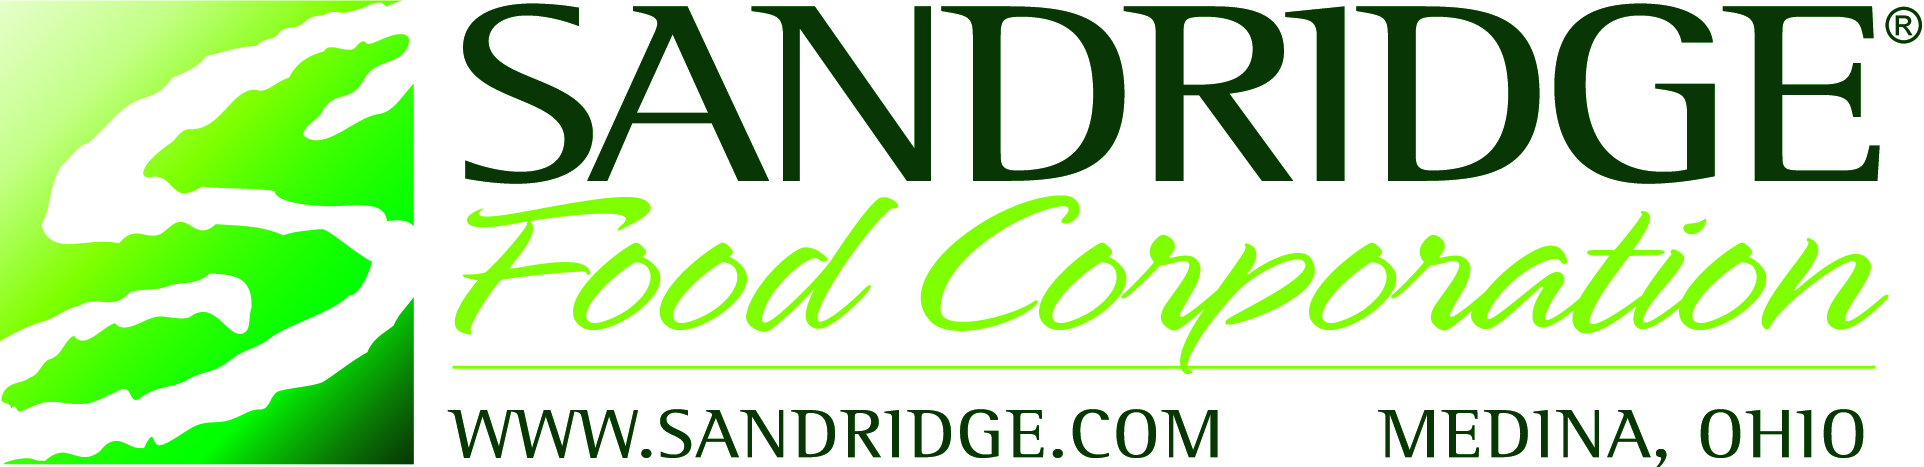 Sandridge Food Corporation